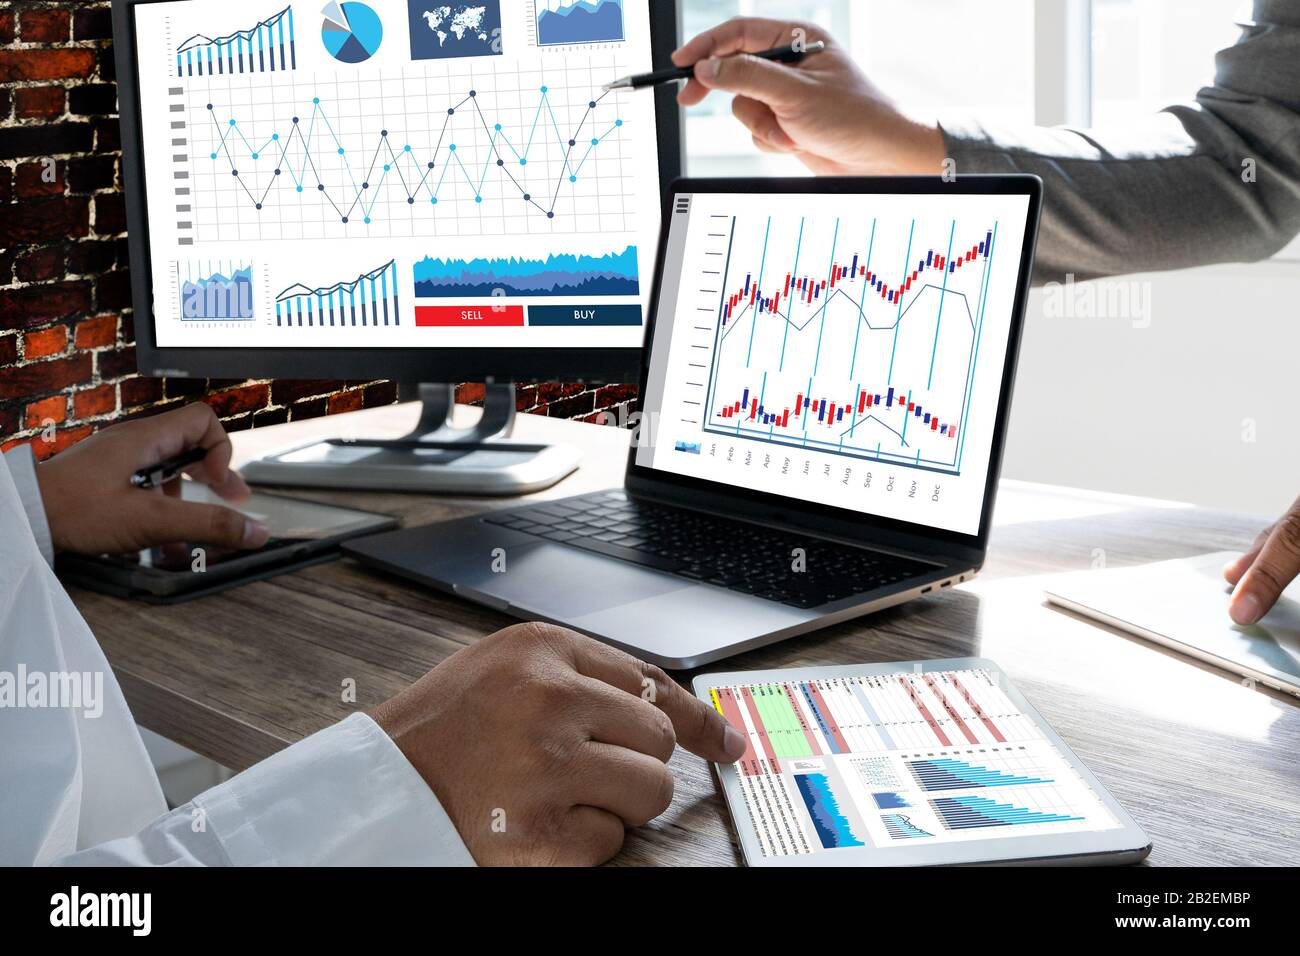 Trabajar duro análisis de datos informaciones estadísticas Business Technology Foto de stock